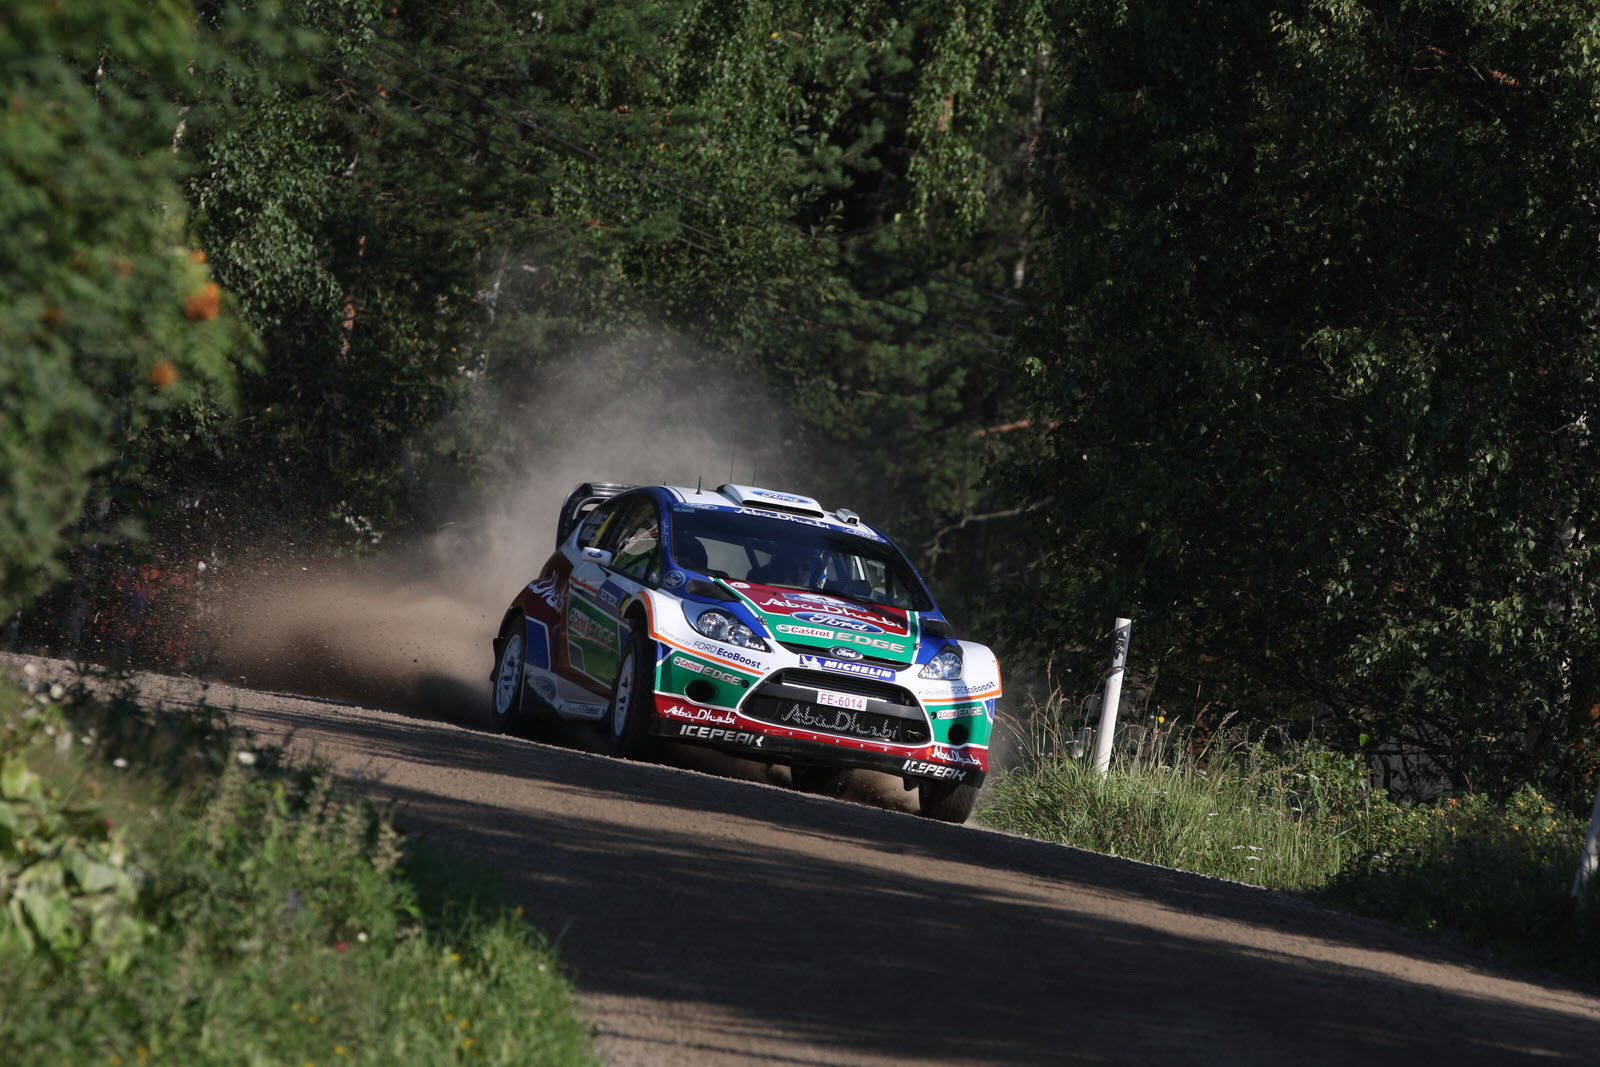 2011 WRC : Loeb wins Neste Oil Rally Finland